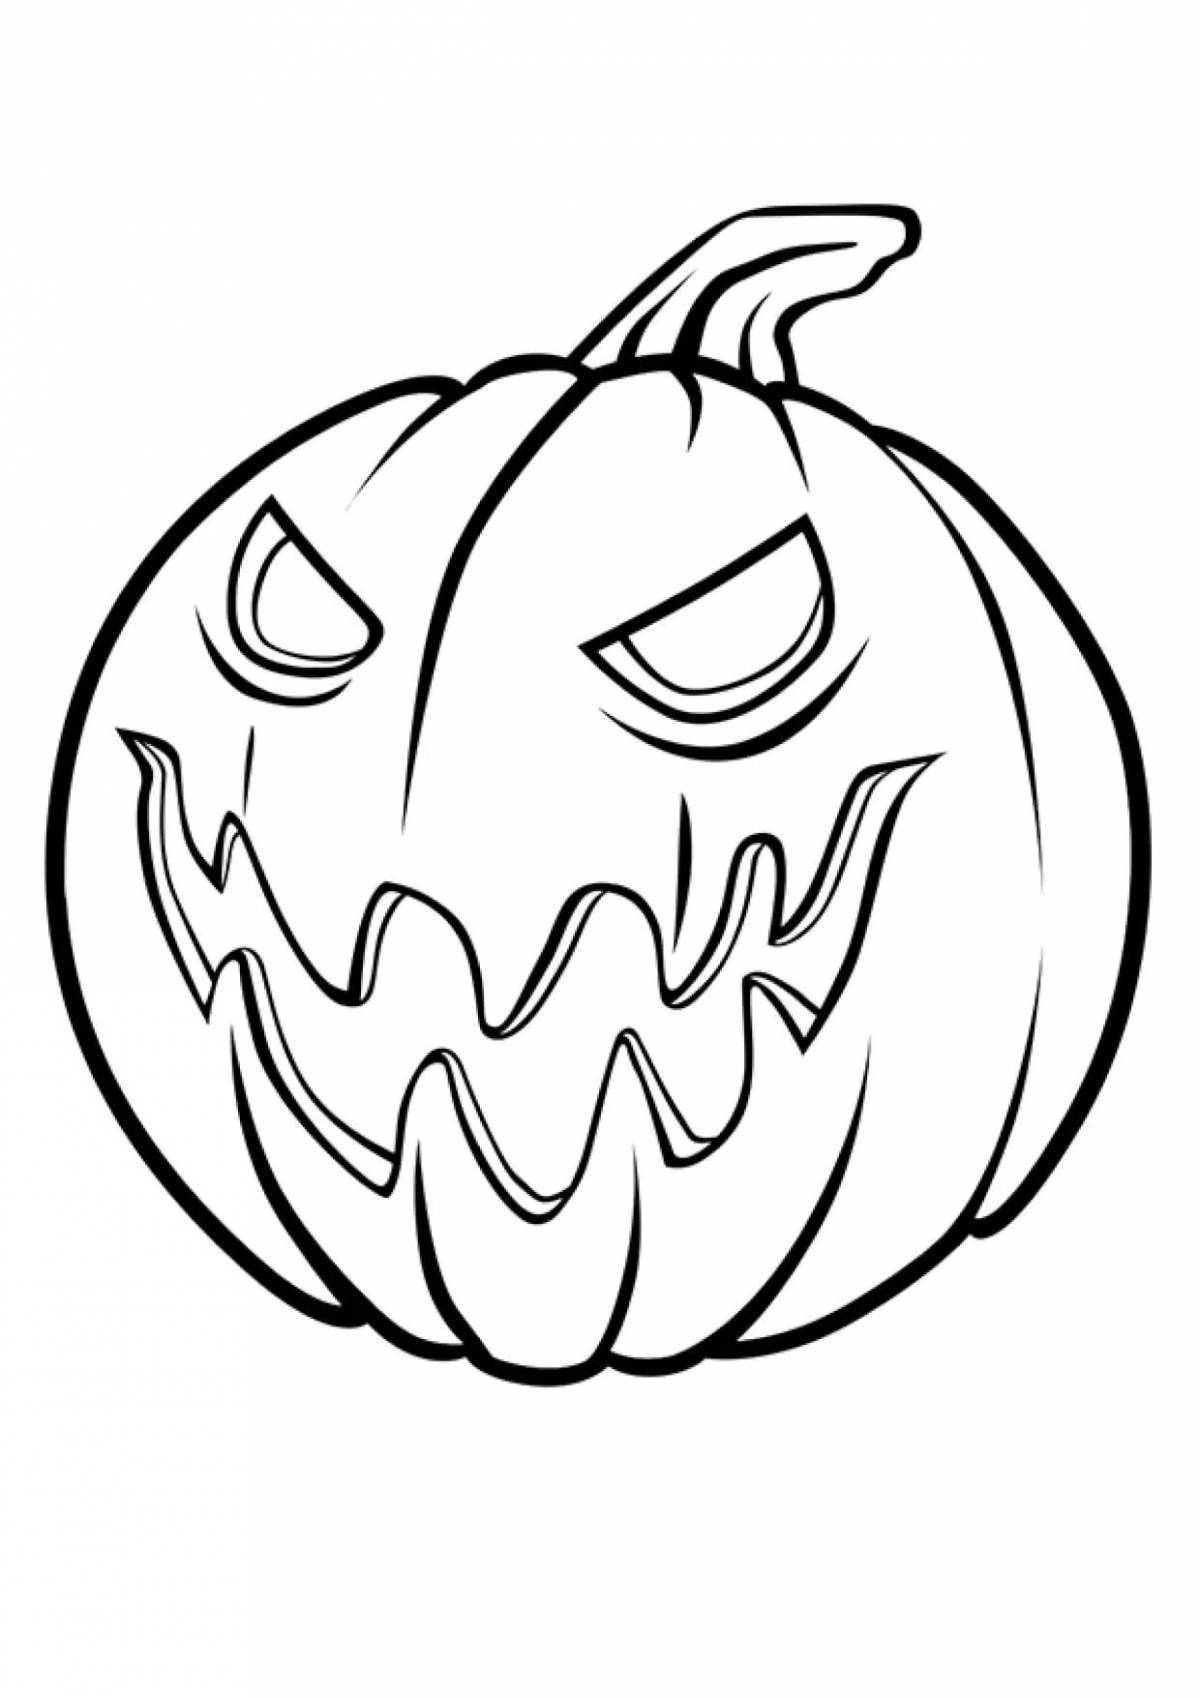 Repulsive halloween pumpkin coloring page